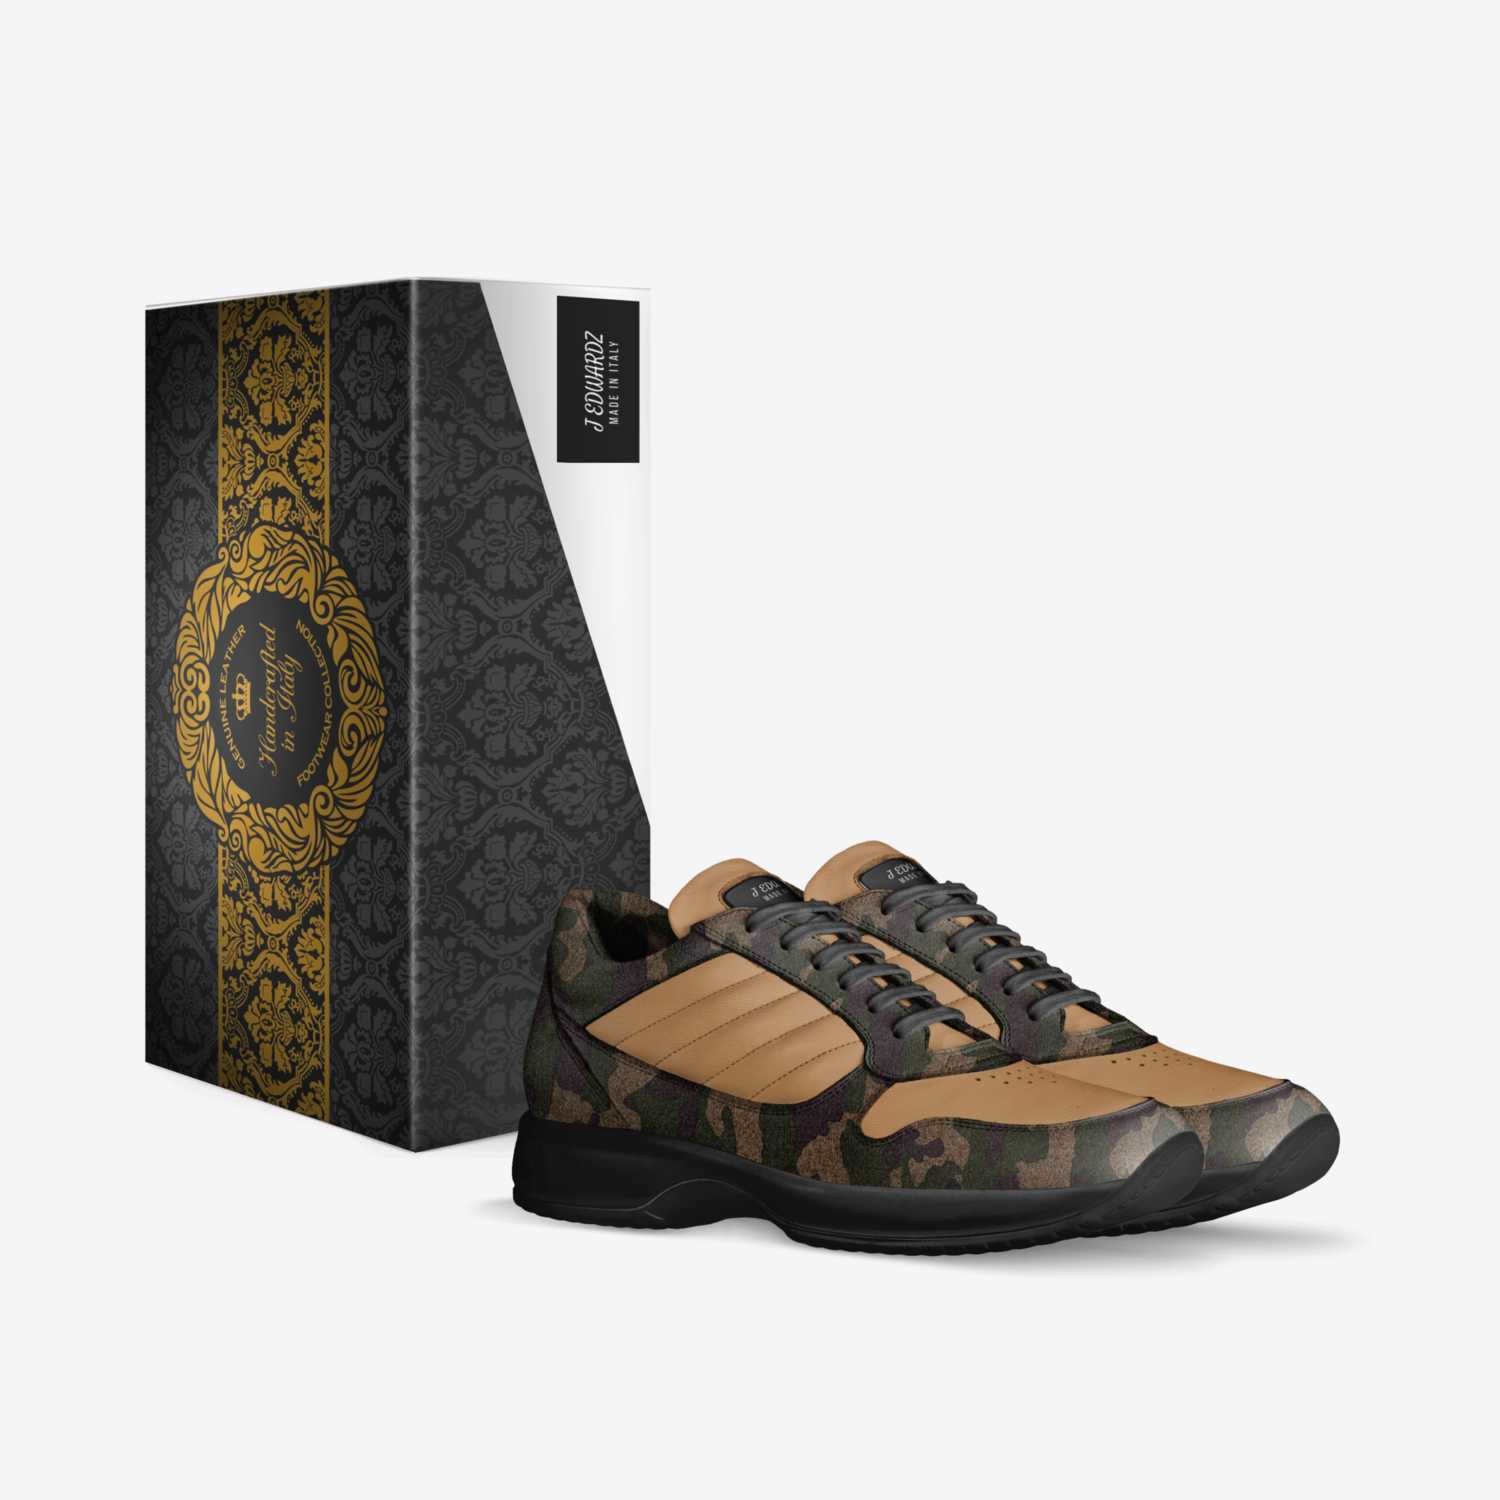 J EDWARDZ custom made in Italy shoes by J Edwardz | Box view